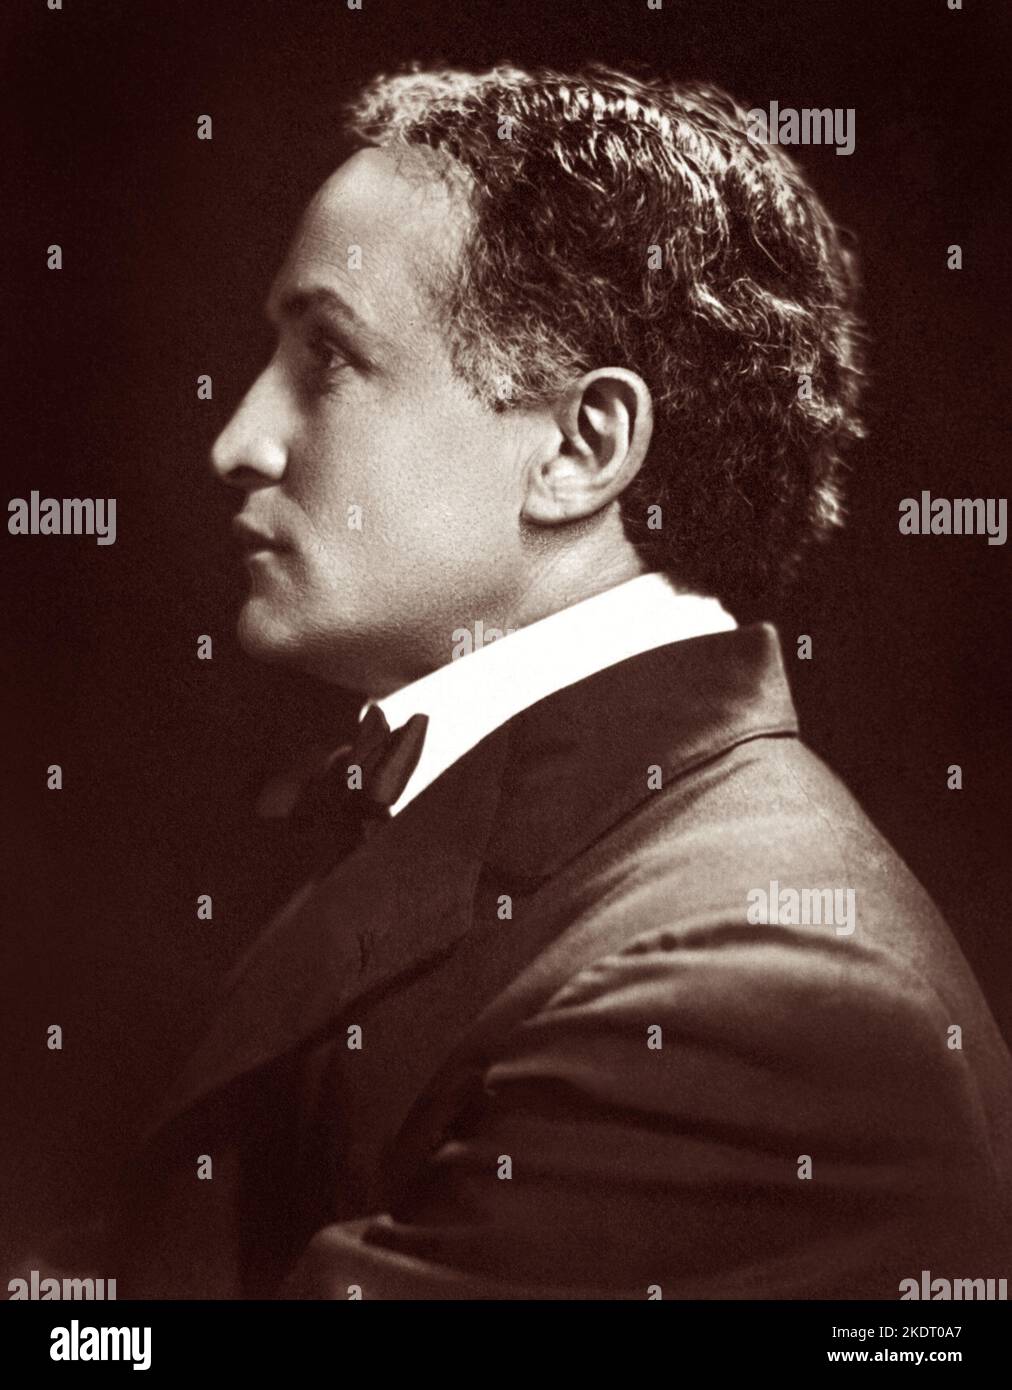 Harry Houdini (1874-1926), illusionniste hongrois-américain et artiste d'évasion, dans un portrait de profil, c1920. Banque D'Images